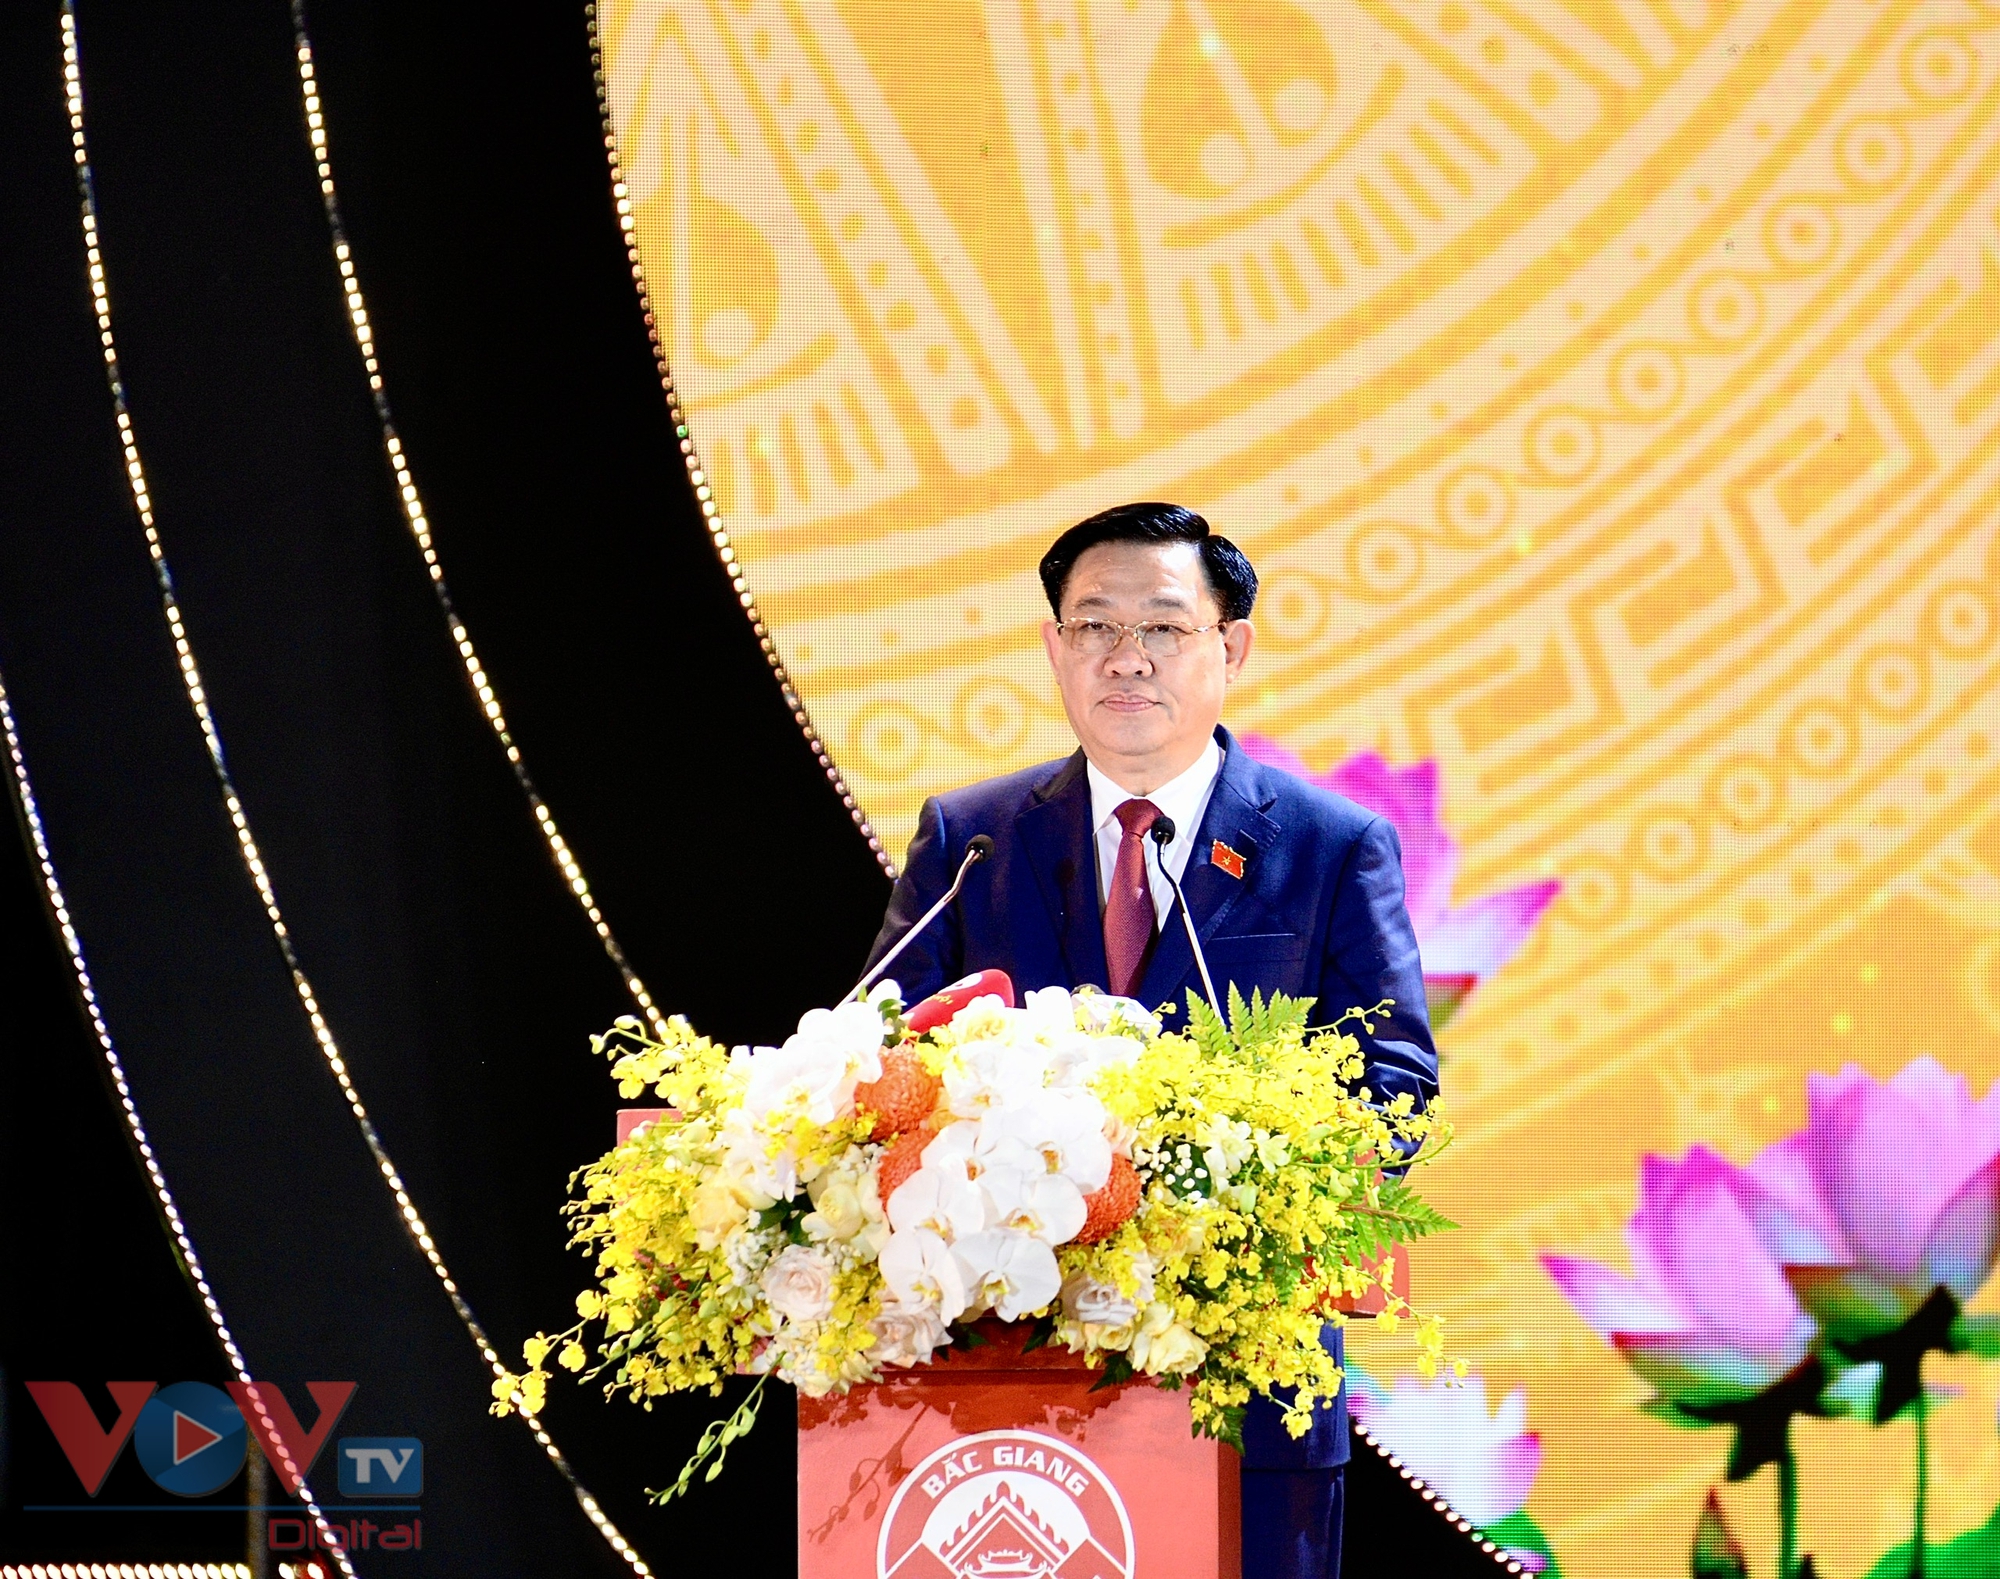 Chủ tịch Quốc hội Vương Đình Huệ dự lễ công bố nghị quyết thành lập thị xã Việt Yên, Bắc Giang- Ảnh 3.